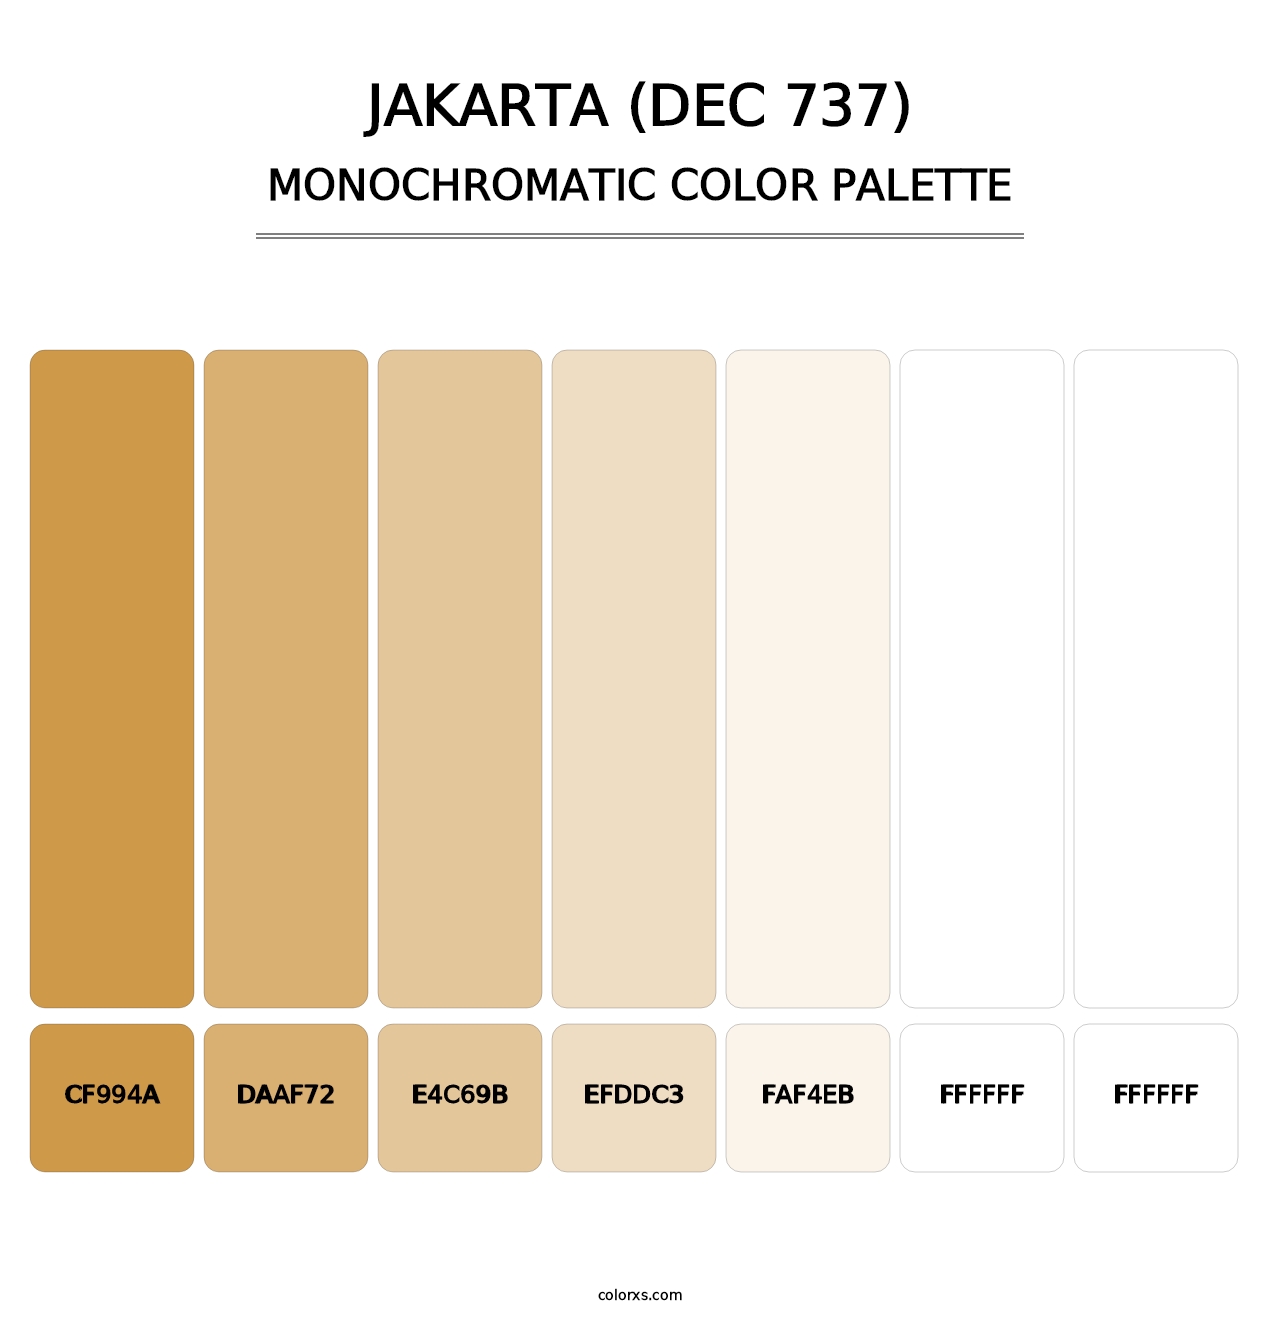 Jakarta (DEC 737) - Monochromatic Color Palette